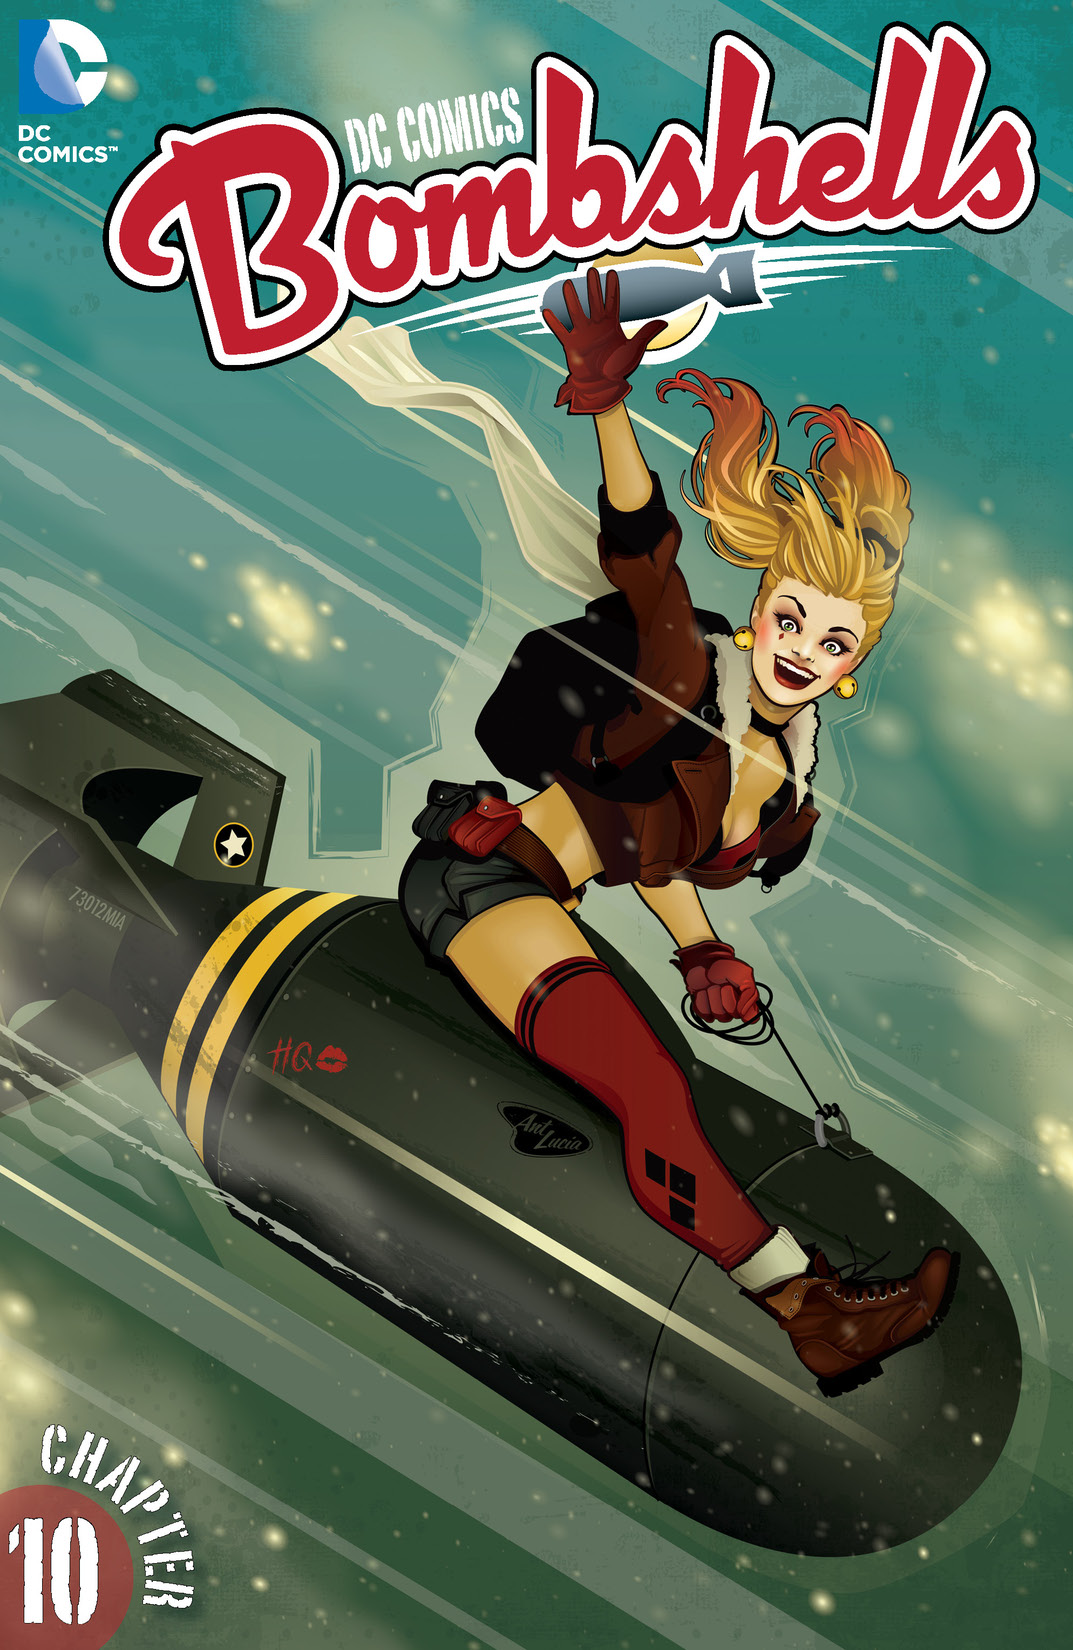 DC Comics: Bombshells #10 preview images